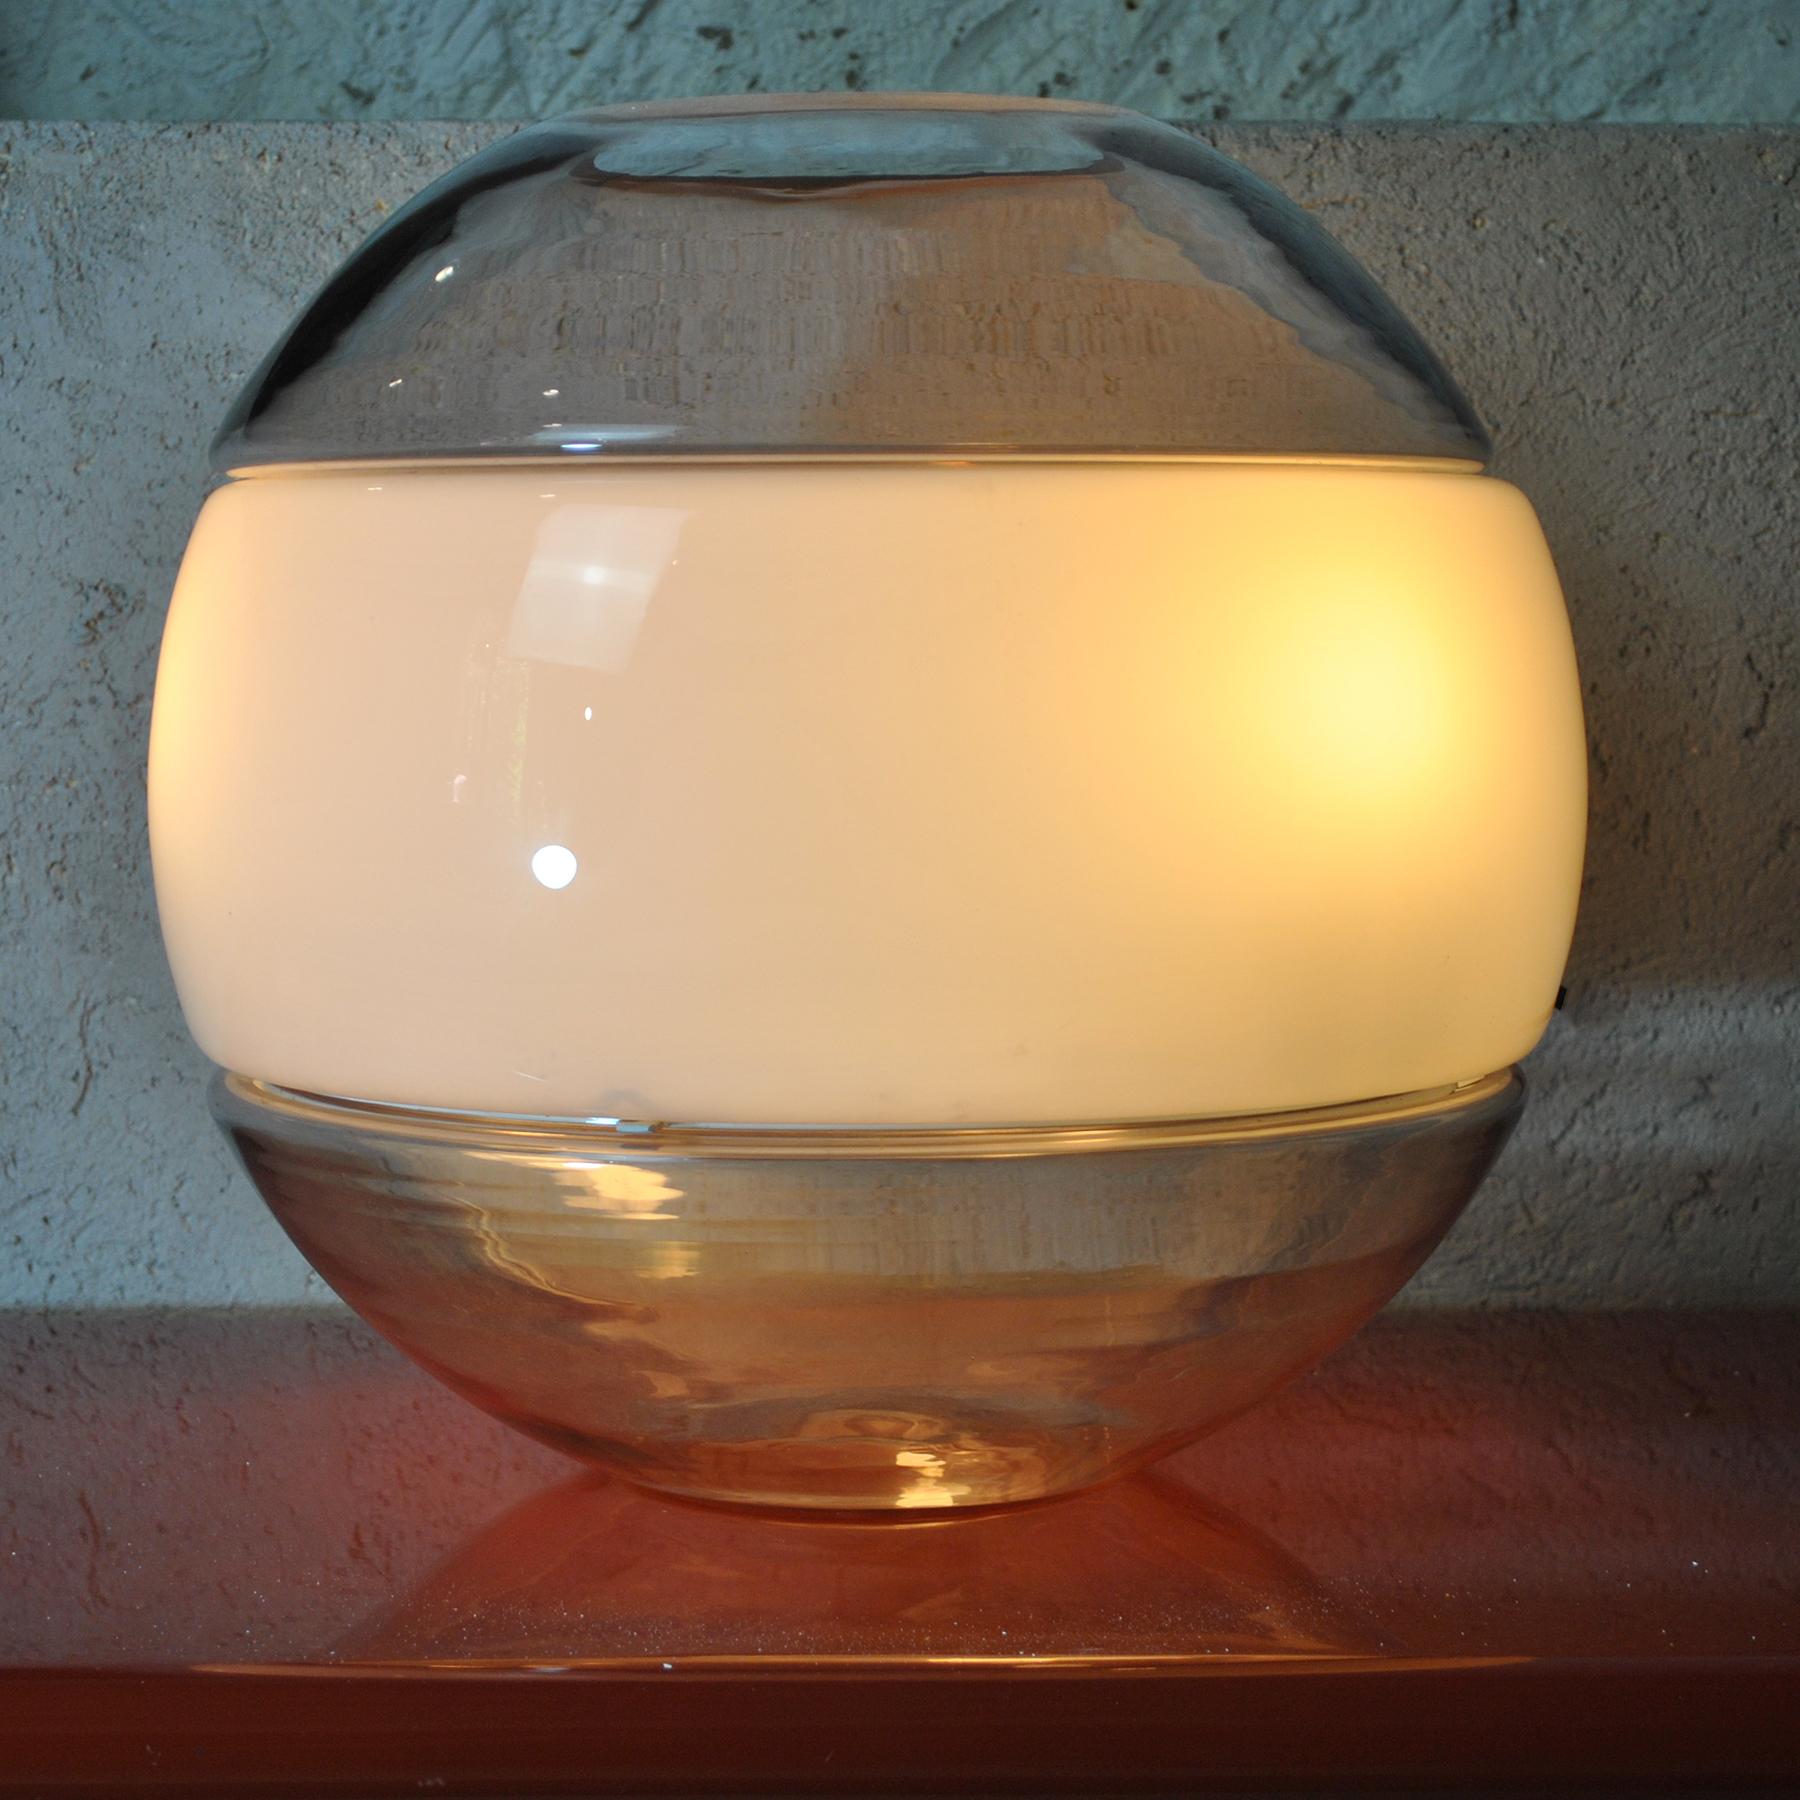 Une belle lampe vase de table des années 1960. Une production italienne de Carlo Nason pour Mazzega en verre Murano coloré.
La particularité de cette lampe est la possibilité de l'utiliser comme vase à fleurs.